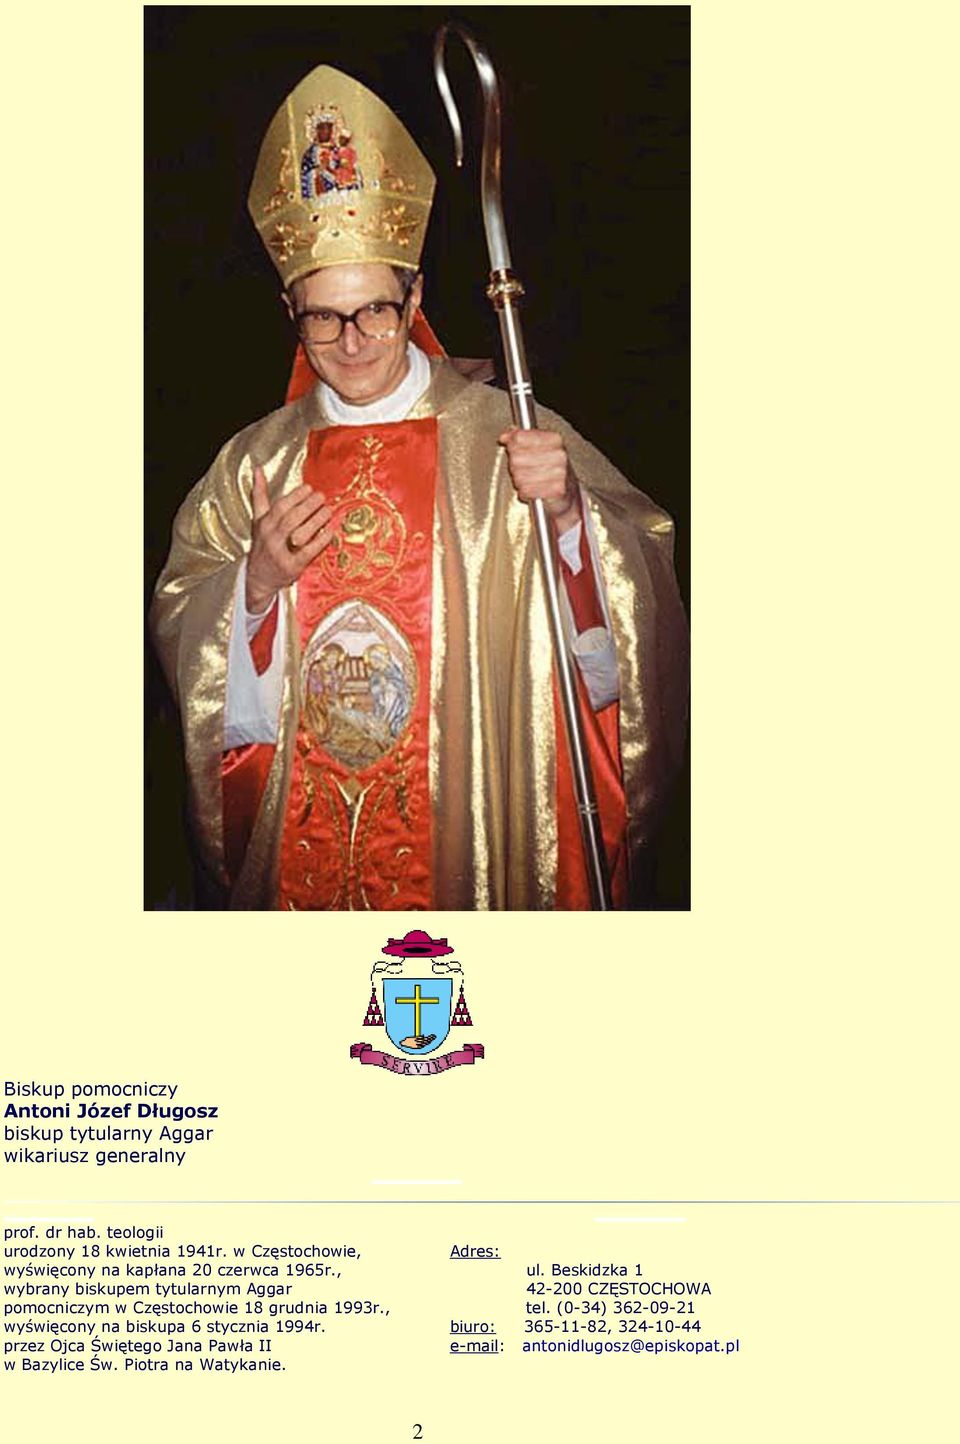 , wybrany biskupem tytularnym Aggar pomocniczym w Częstochowie 18 grudnia 1993r., wyświęcony na biskupa 6 stycznia 1994r.